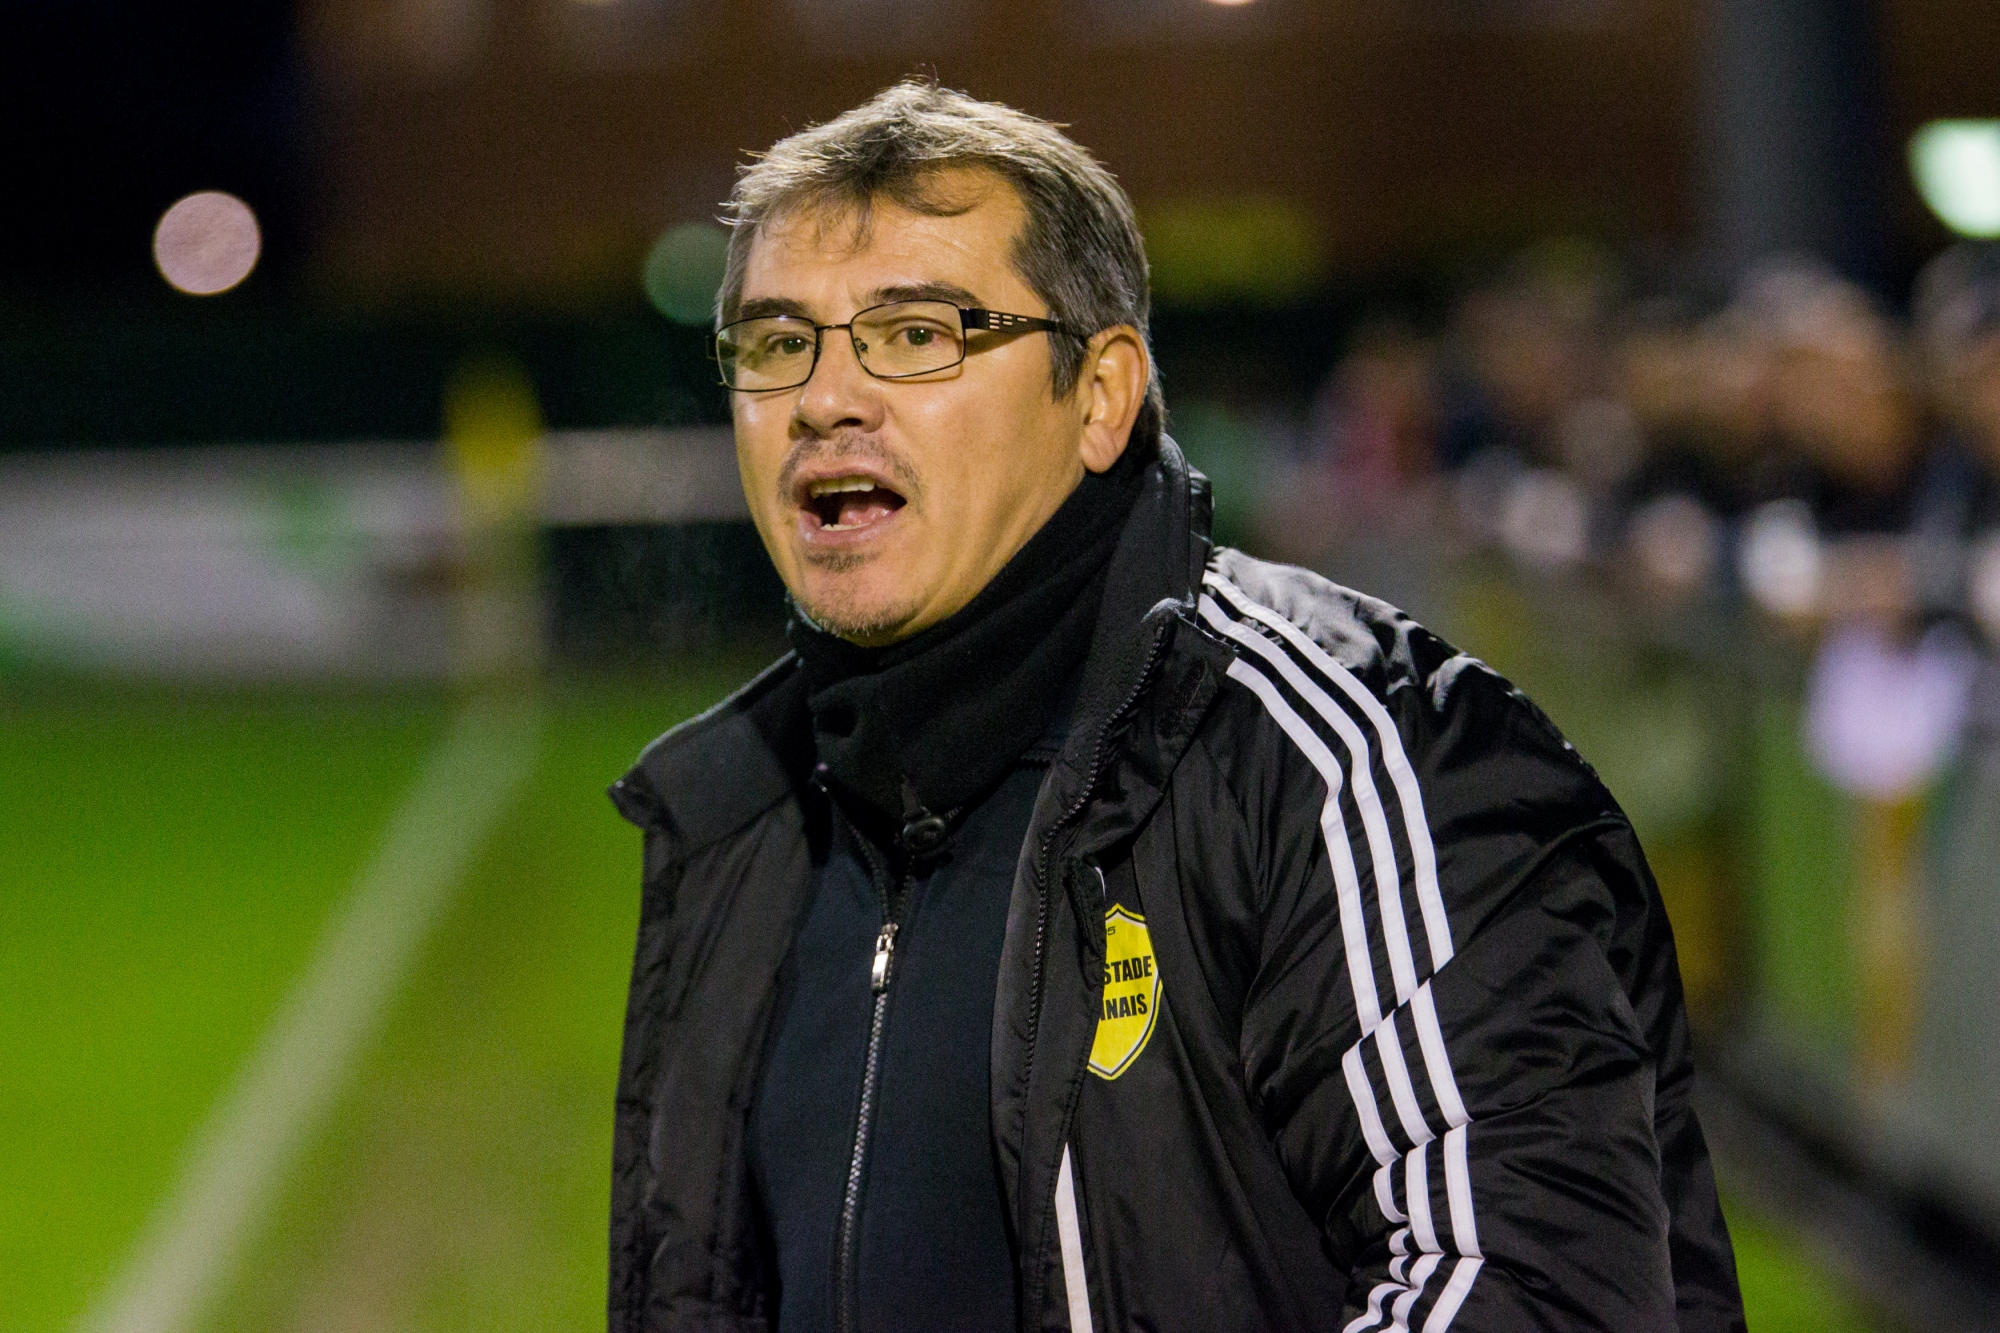 Oscar Londono ne sera plus l'entraîneur du Stade Nyonnais la saison prochaine.